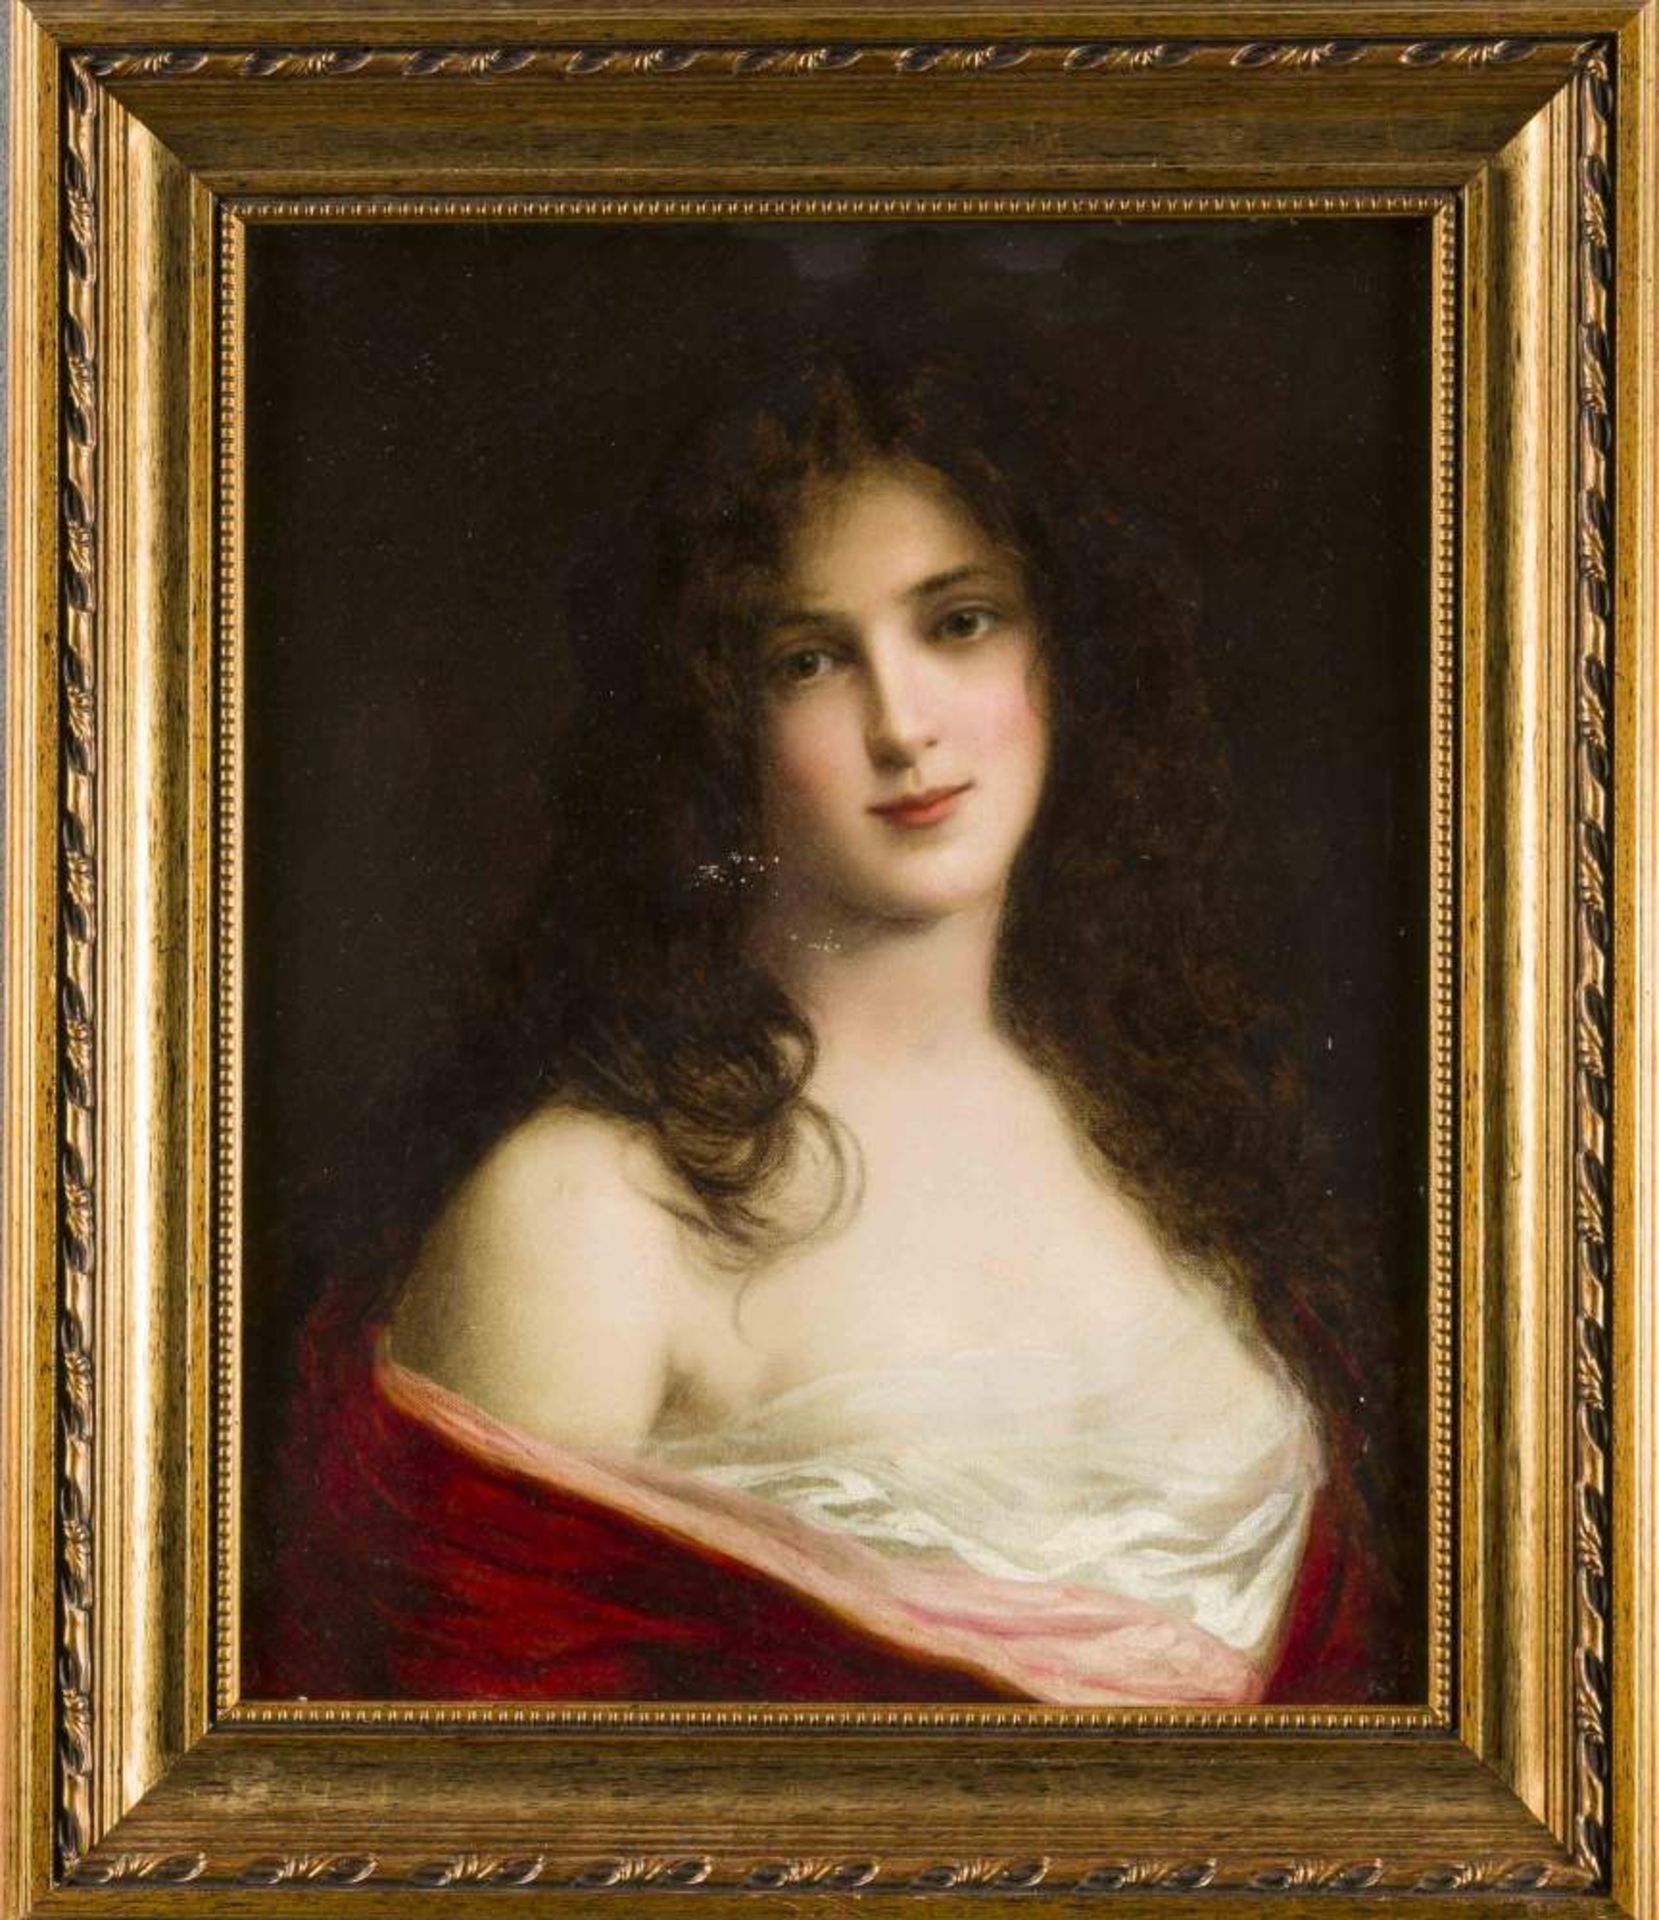 Anonymer Maler um 1900, Bildnis einer jungen Schönheit, die dem Betrachter eine nackteSchulter und